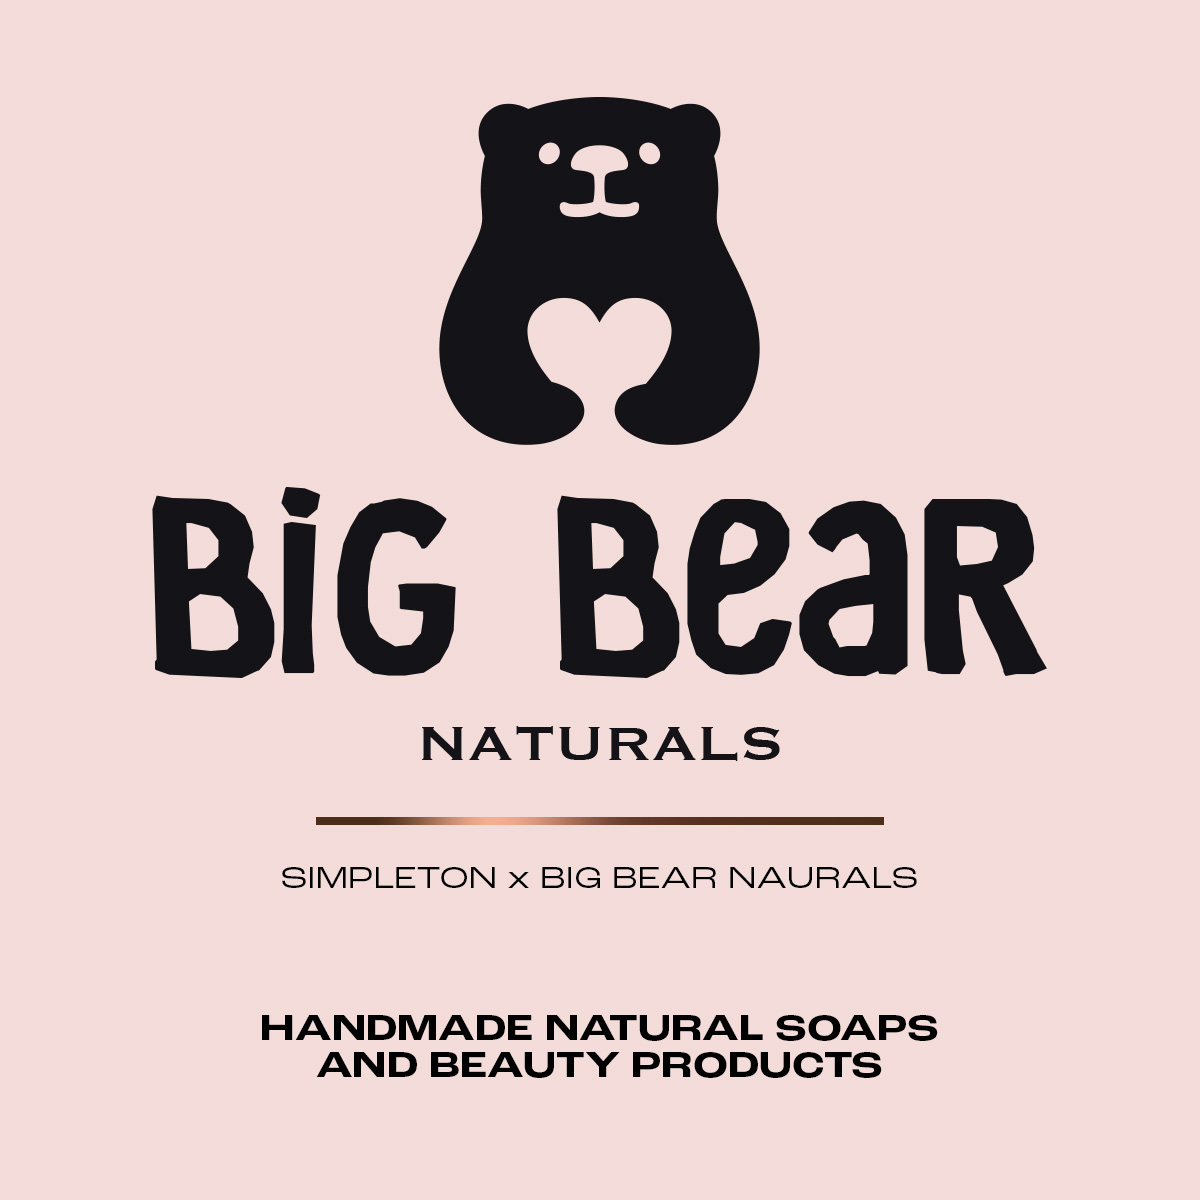 Big Bear Naturals